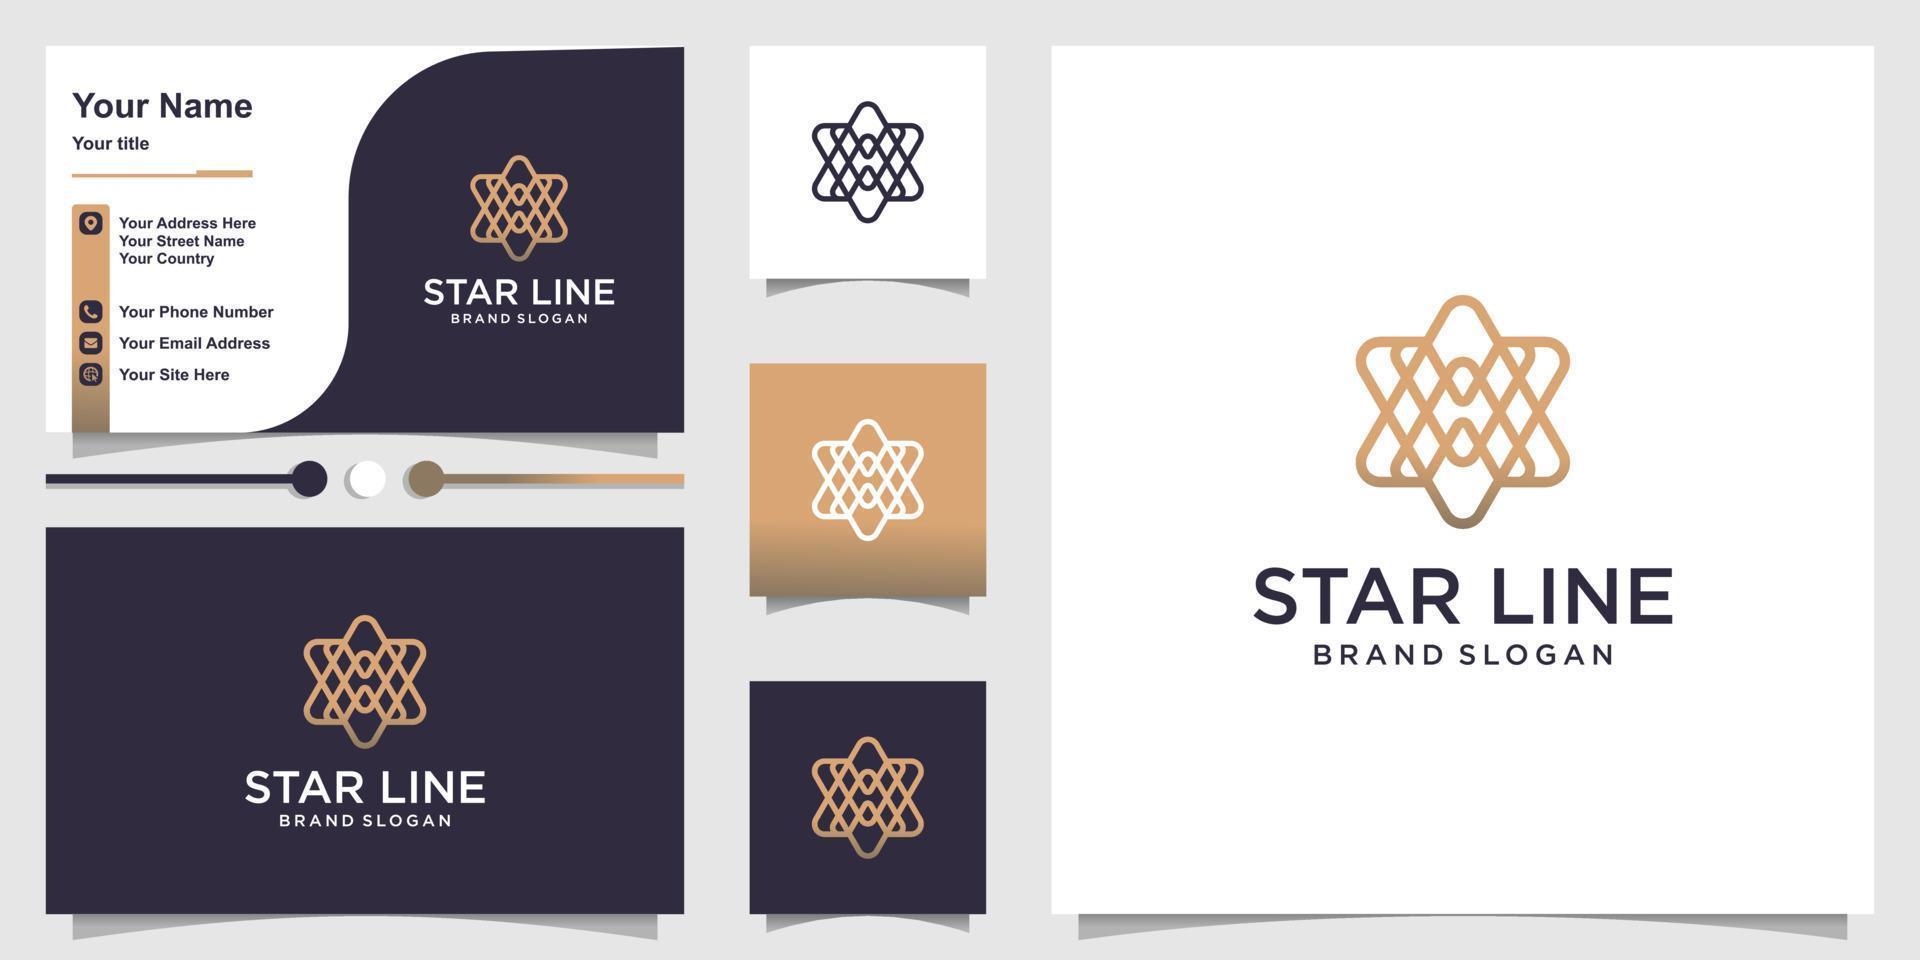 logo étoile avec concept d'art en ligne cool moderne et modèle de conception de carte de visite vecteur premium